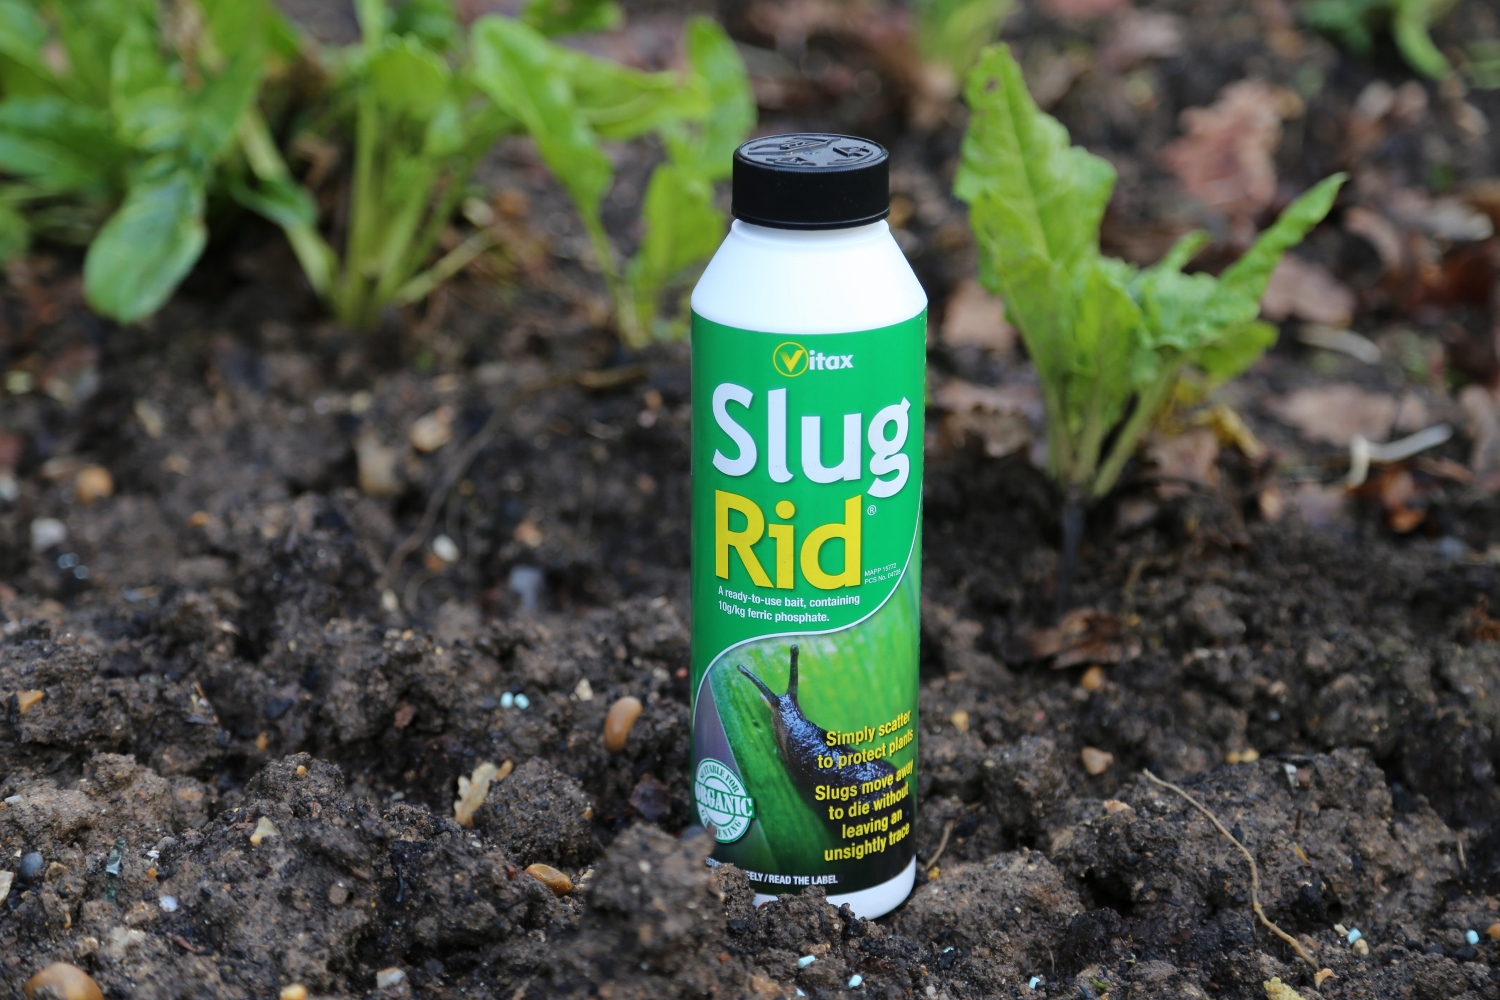 Slug Rid pellets